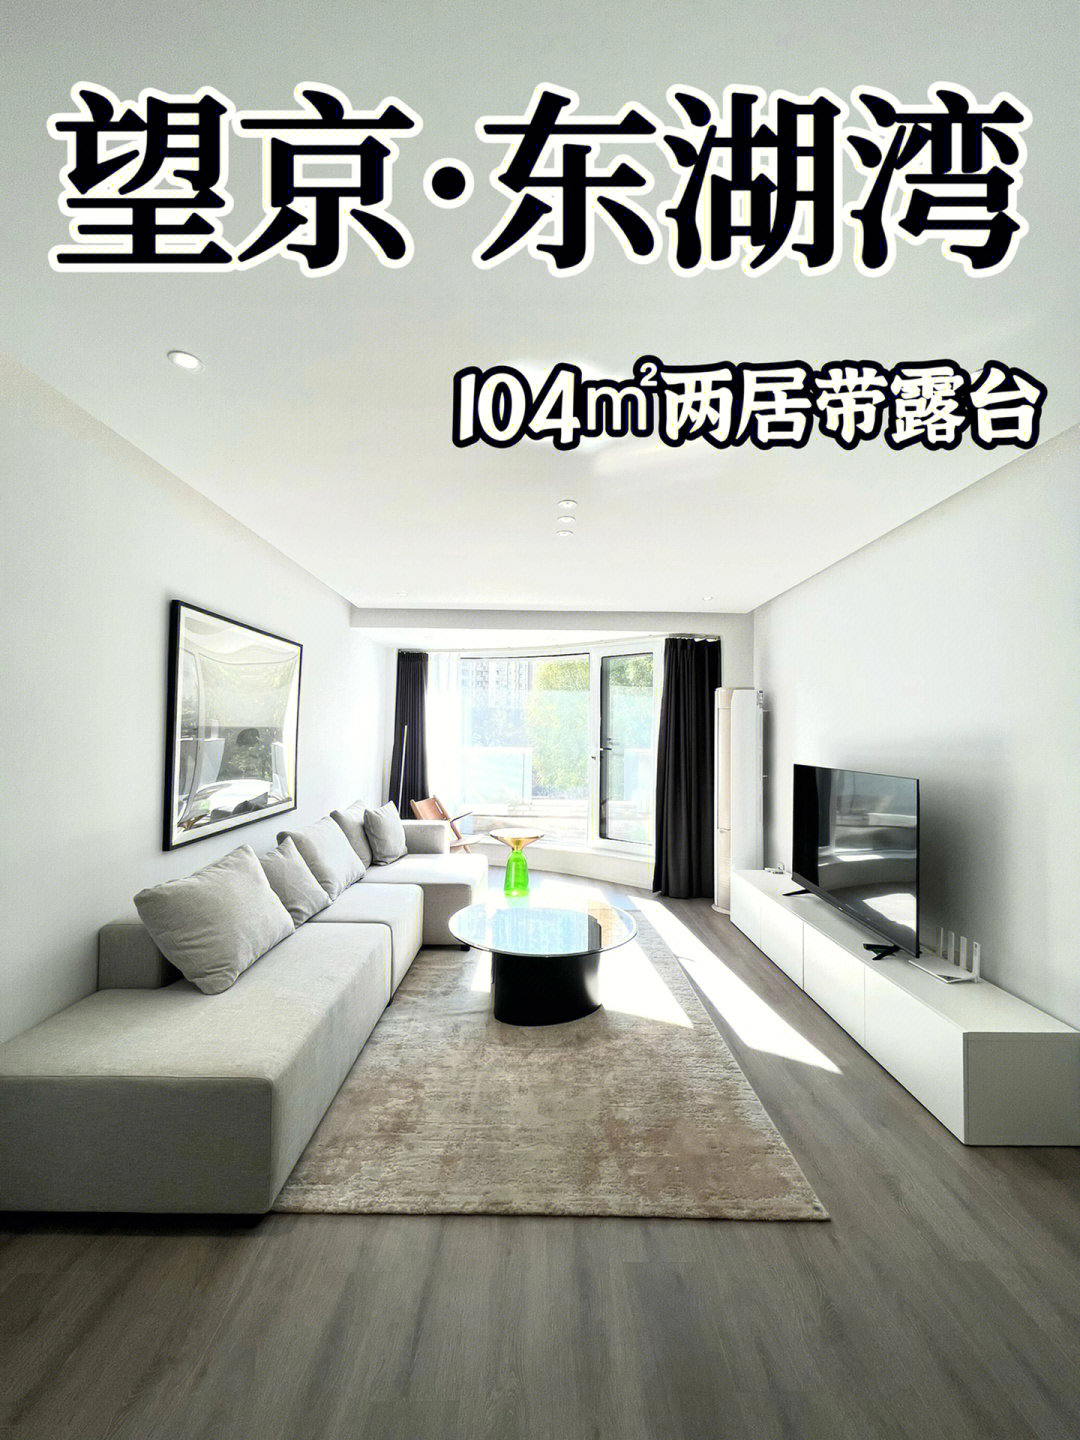 东湖湾面积:104平米朝向:南户型:两室两厅一卫带露台楼盘位于北京市